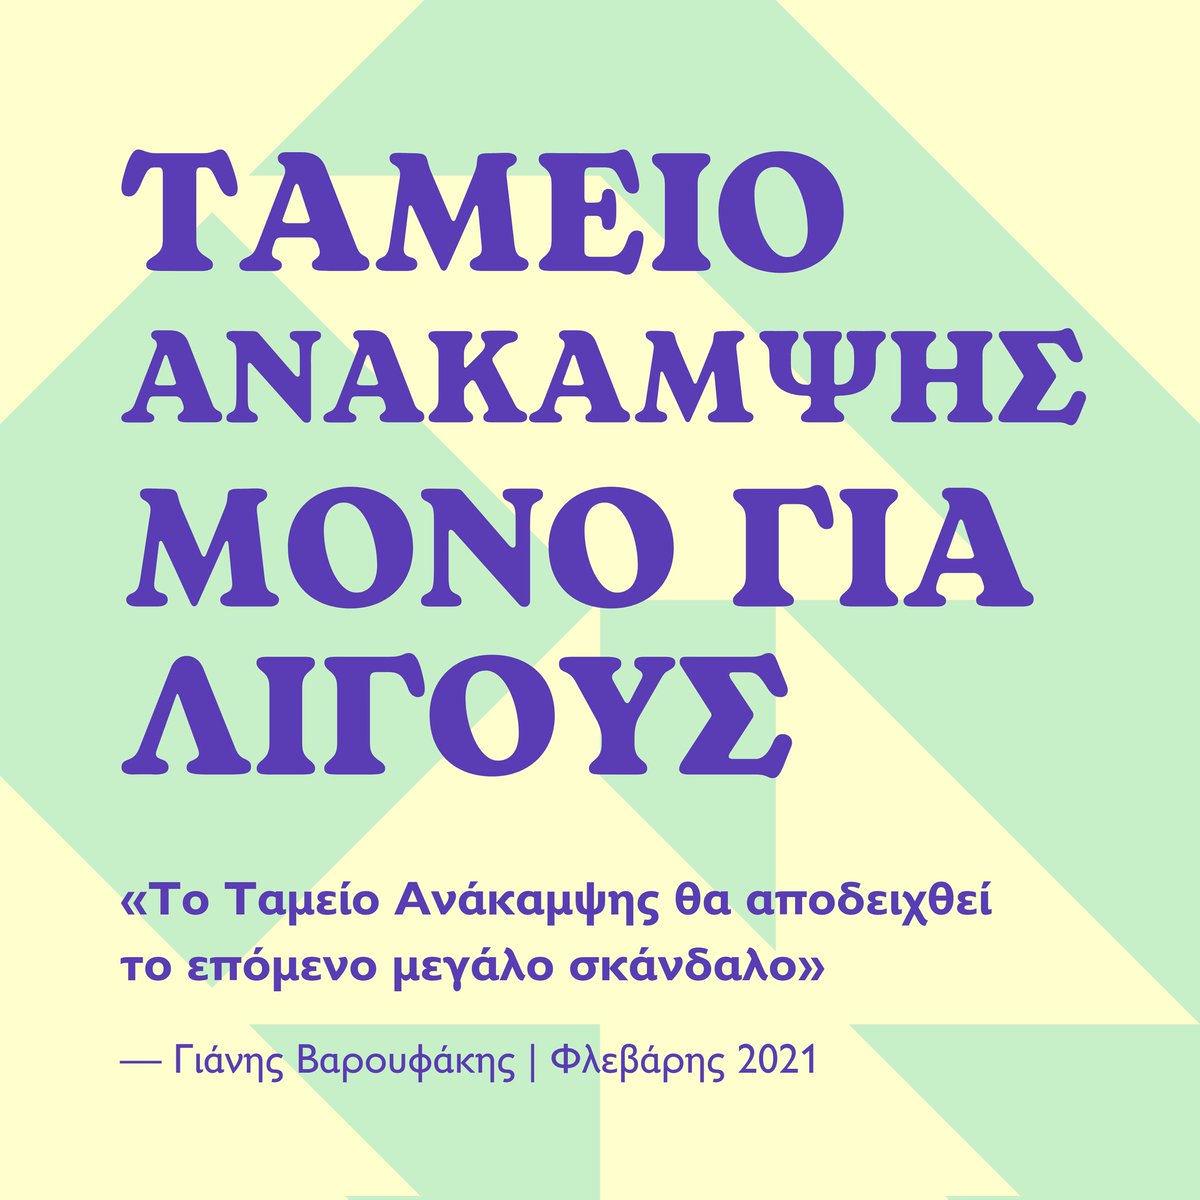 Από τον Φλεβάρη του '21 ο Γιάνης Βαρουφάκης λέει δημόσια και από το βήμα της Βουλής ότι «το Ταμείο Ανάκαμψης θα αποδειχθεί το επόμενο μεγάλο σκάνδαλο». Τώρα διερευνάται το σκάνδαλο από τις δημόσιες αρχές, ενώ ΣΥΡΙΖΑ, Νέα Αριστερά και ΠΑΣΟΚ καταγγέλλουν αυτό που τότε ψήφισαν. ➡️…